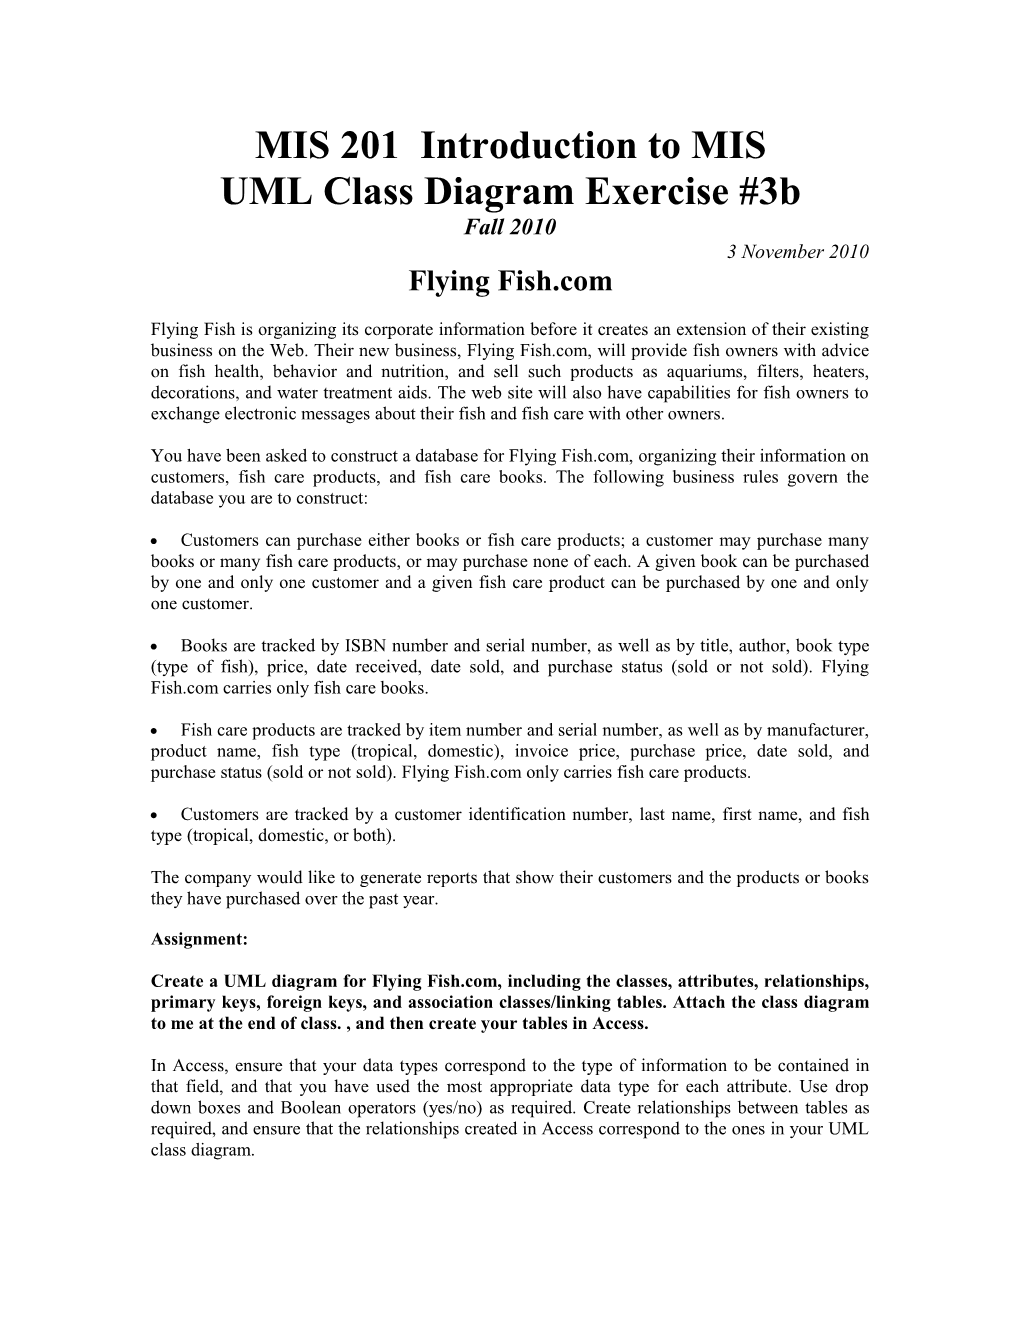 MIS 201 UML Class Diagram Exercise, Build 3